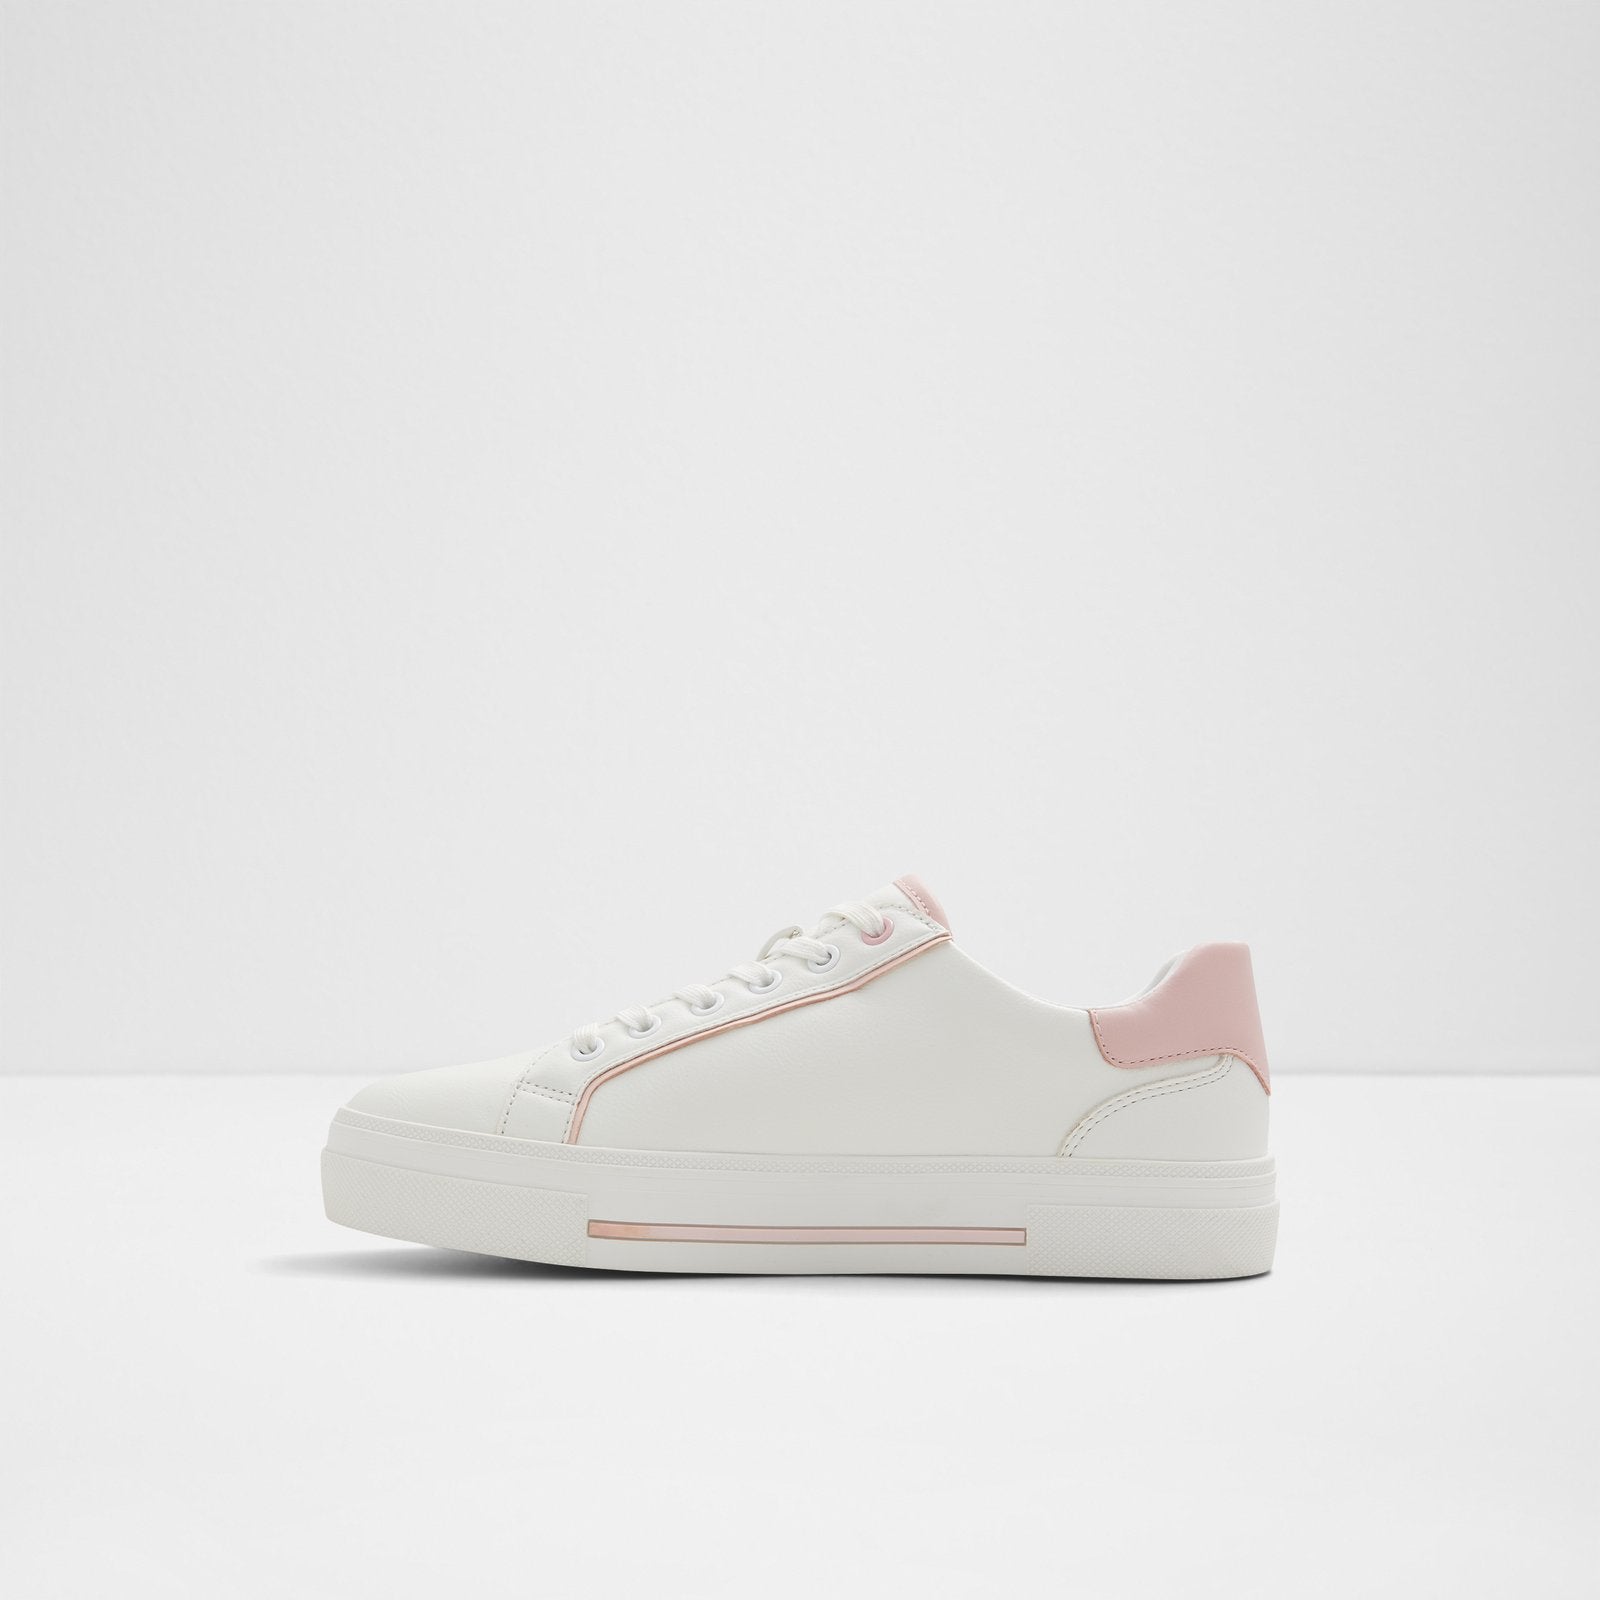 Onirasean (Online Exclusive) Women Shoes - Dark Pink - ALDO KSA